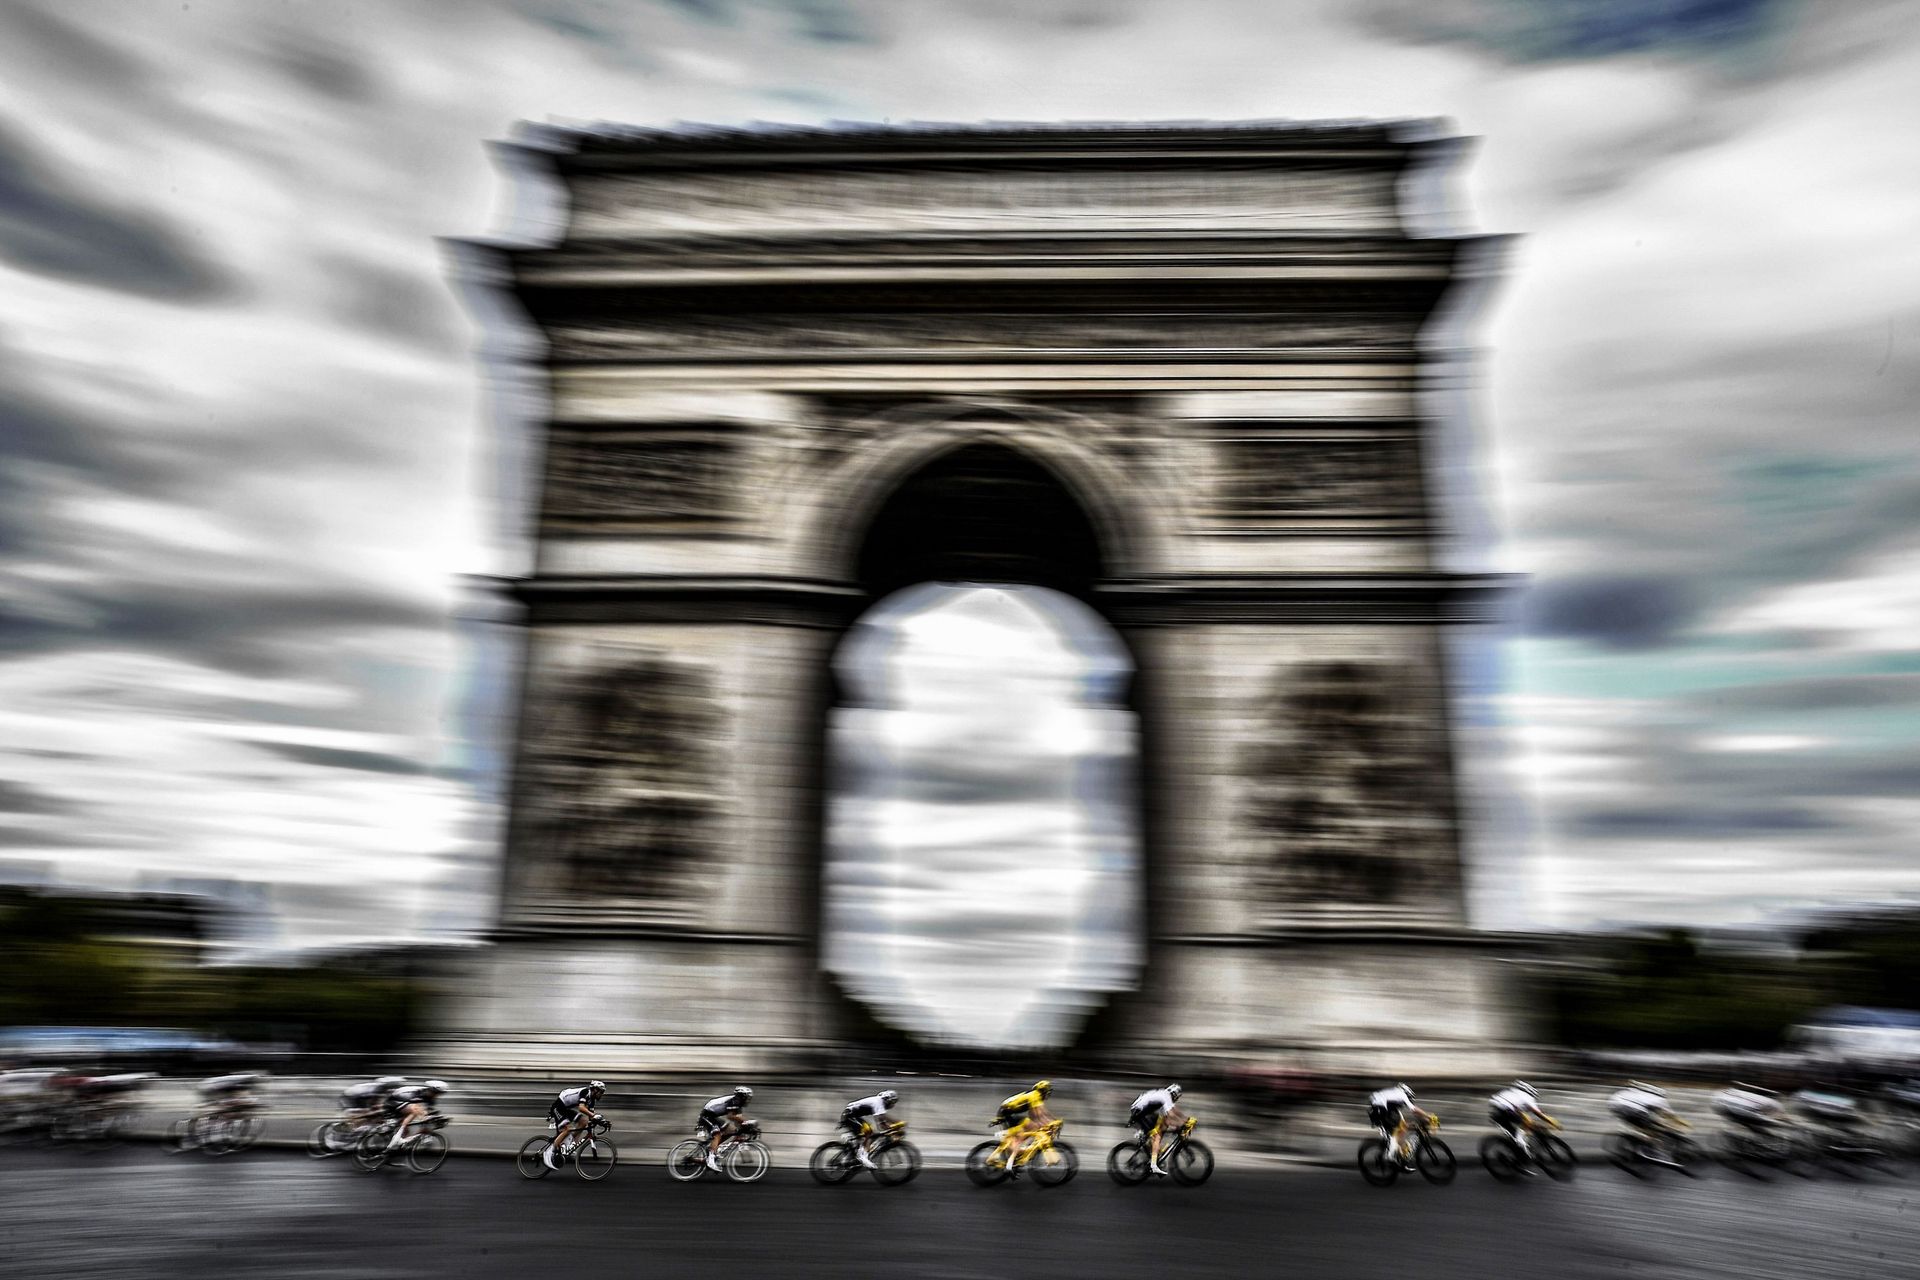 À défaut de Maillot jaune, les Champs-Elysées et l'Arc de Triomphe devront se contenter de Gilets jaunes cette année.